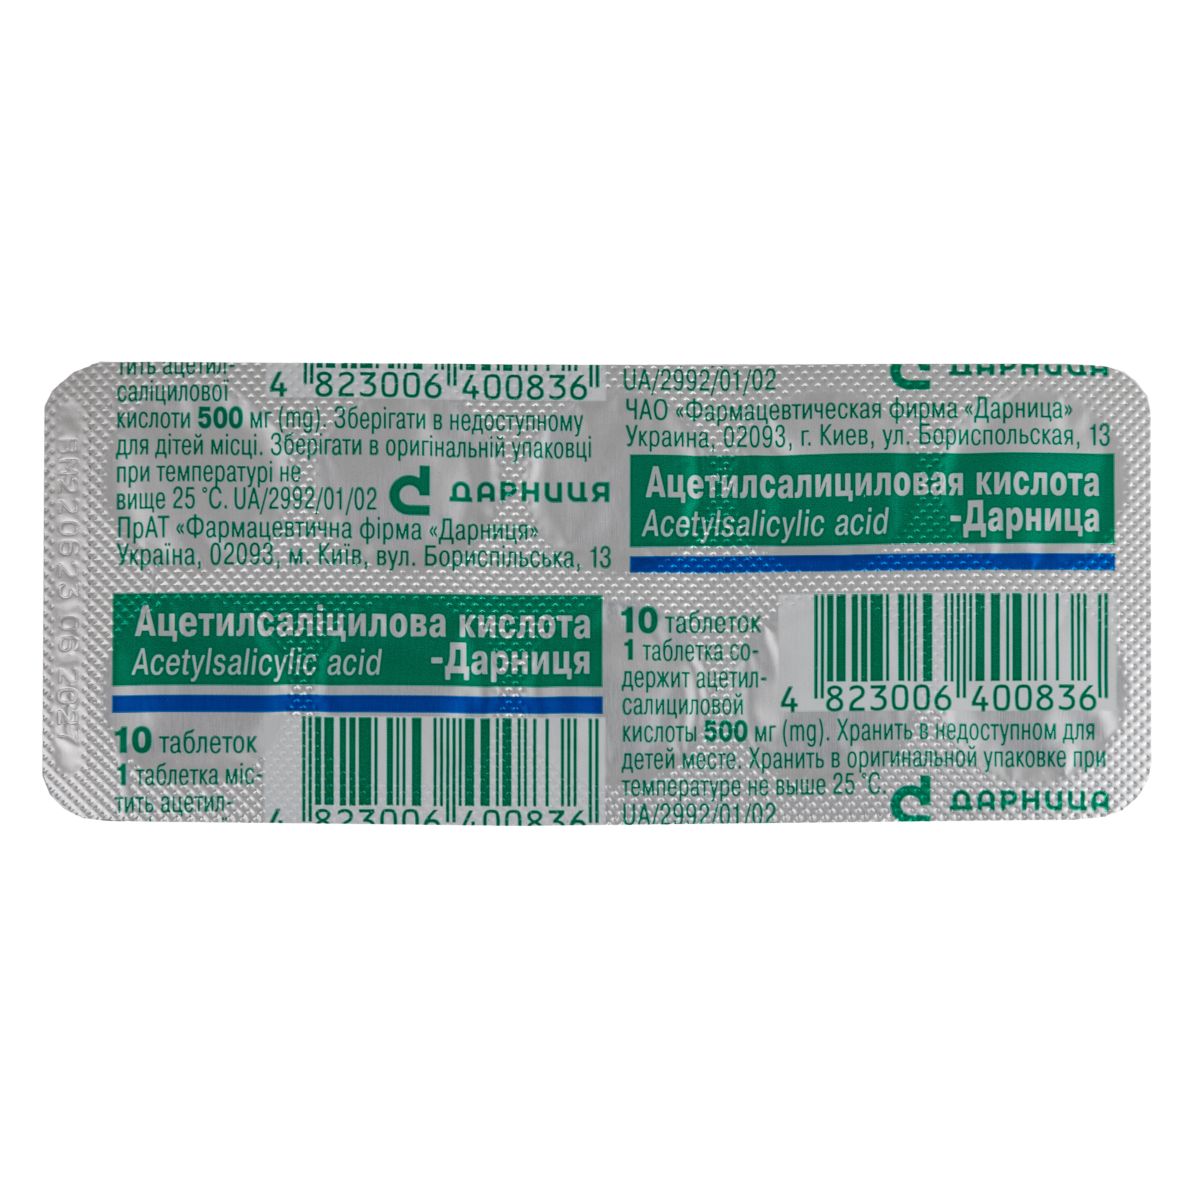 Инструкция Ацетилсалициловая кислота-Дарница таблетки 500 мг №10 - купить в  Аптеке Низких Цен с доставкой по Украине, цена, инструкция, аналоги, отзывы